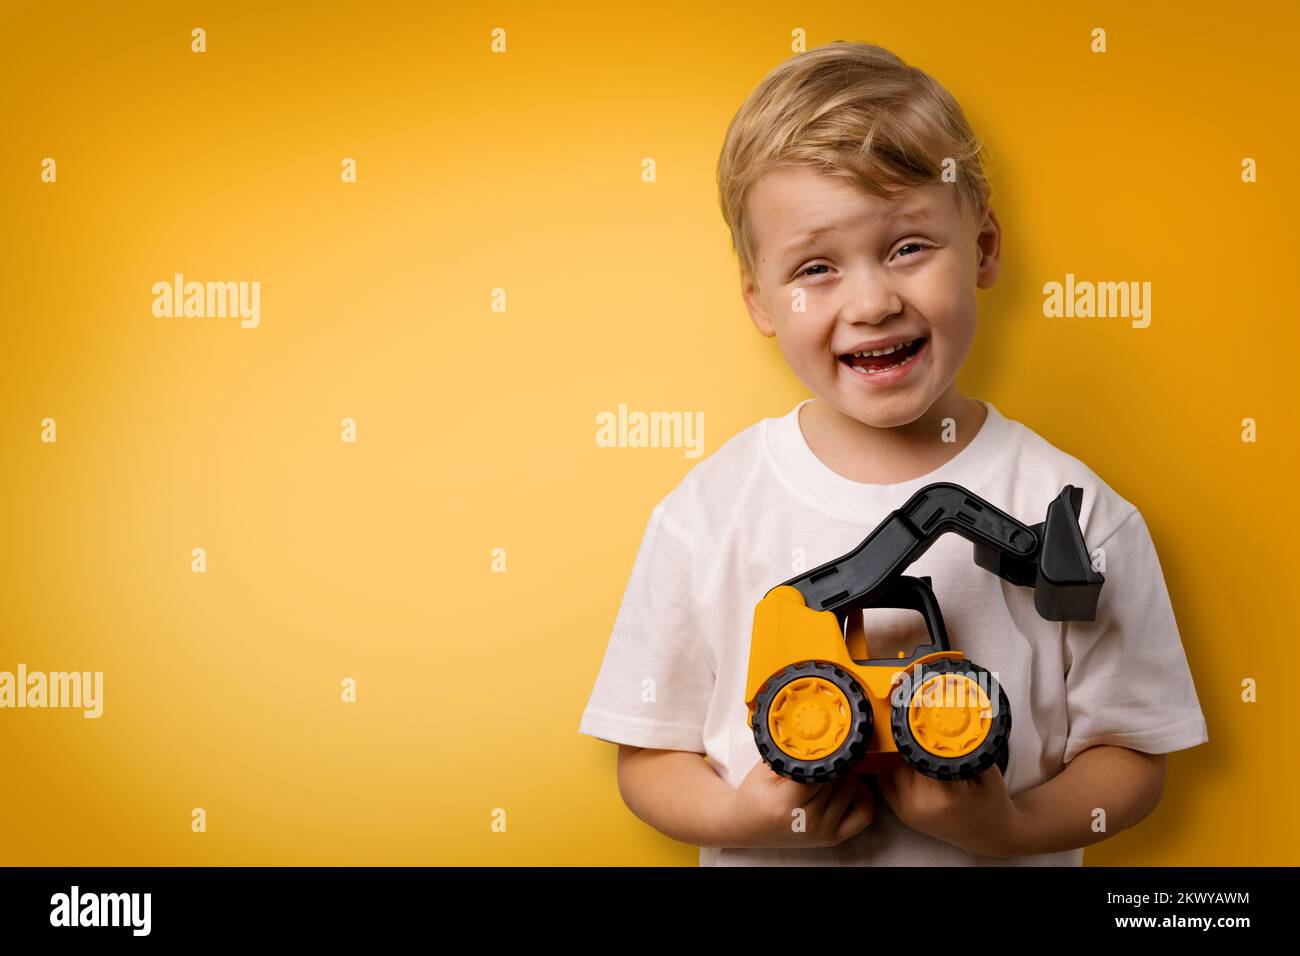 petit garçon souriant avec tracteur jouet dans les mains sur fond jaune avec espace de copie Banque D'Images